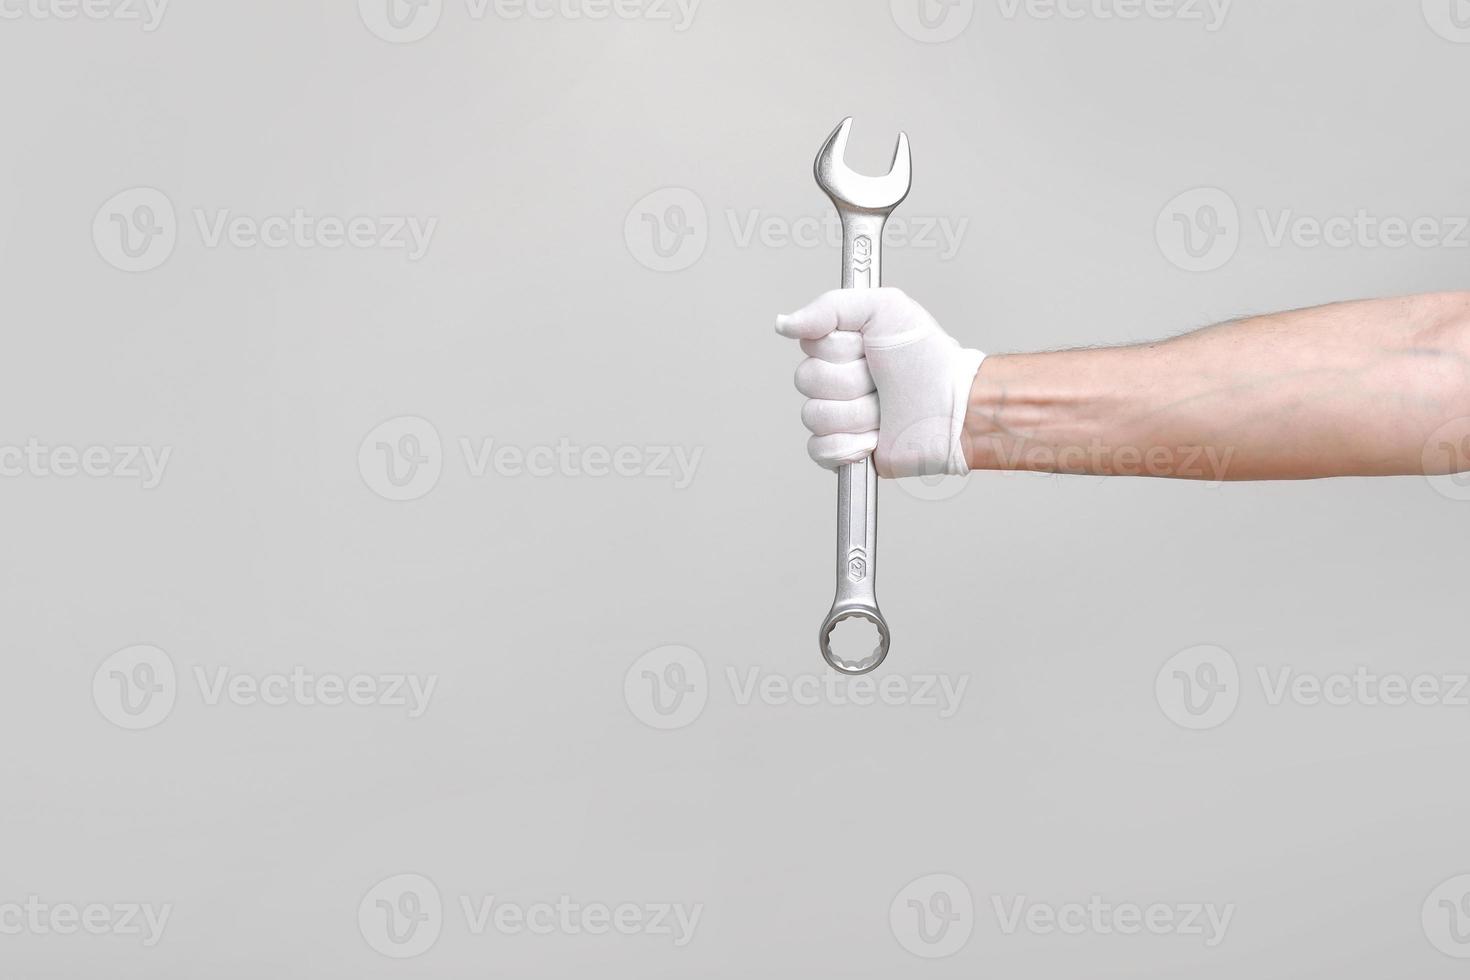 en arbetare, byggare, reparatör, hantverkare, händer med skyddshandske som håller en skiftnyckel på vit bakgrund. mockup kopia utrymme foto